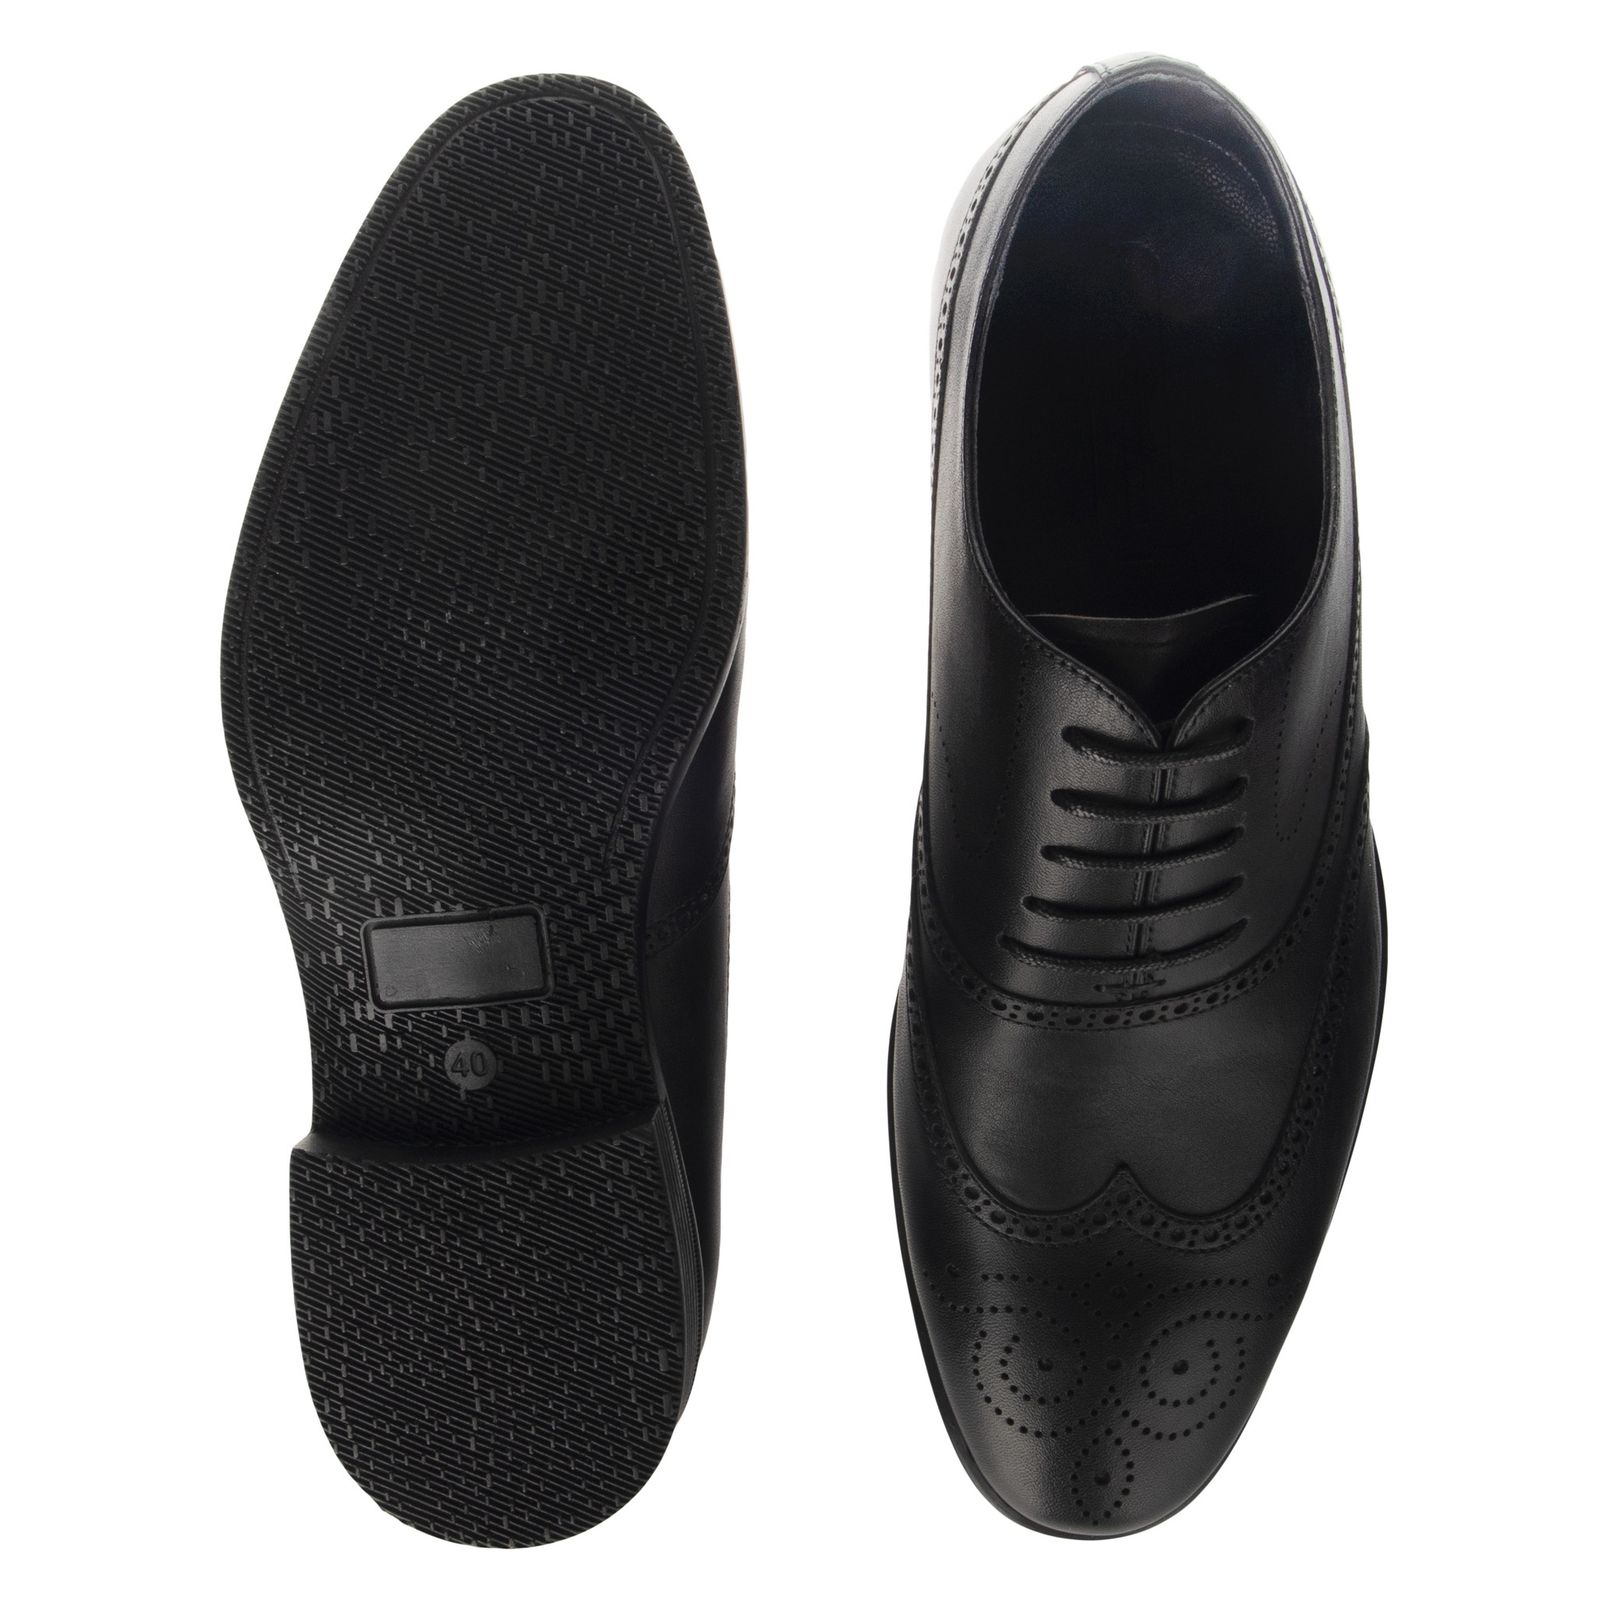 کفش مردانه گاندو مدل 501-99 - مشکی - 4